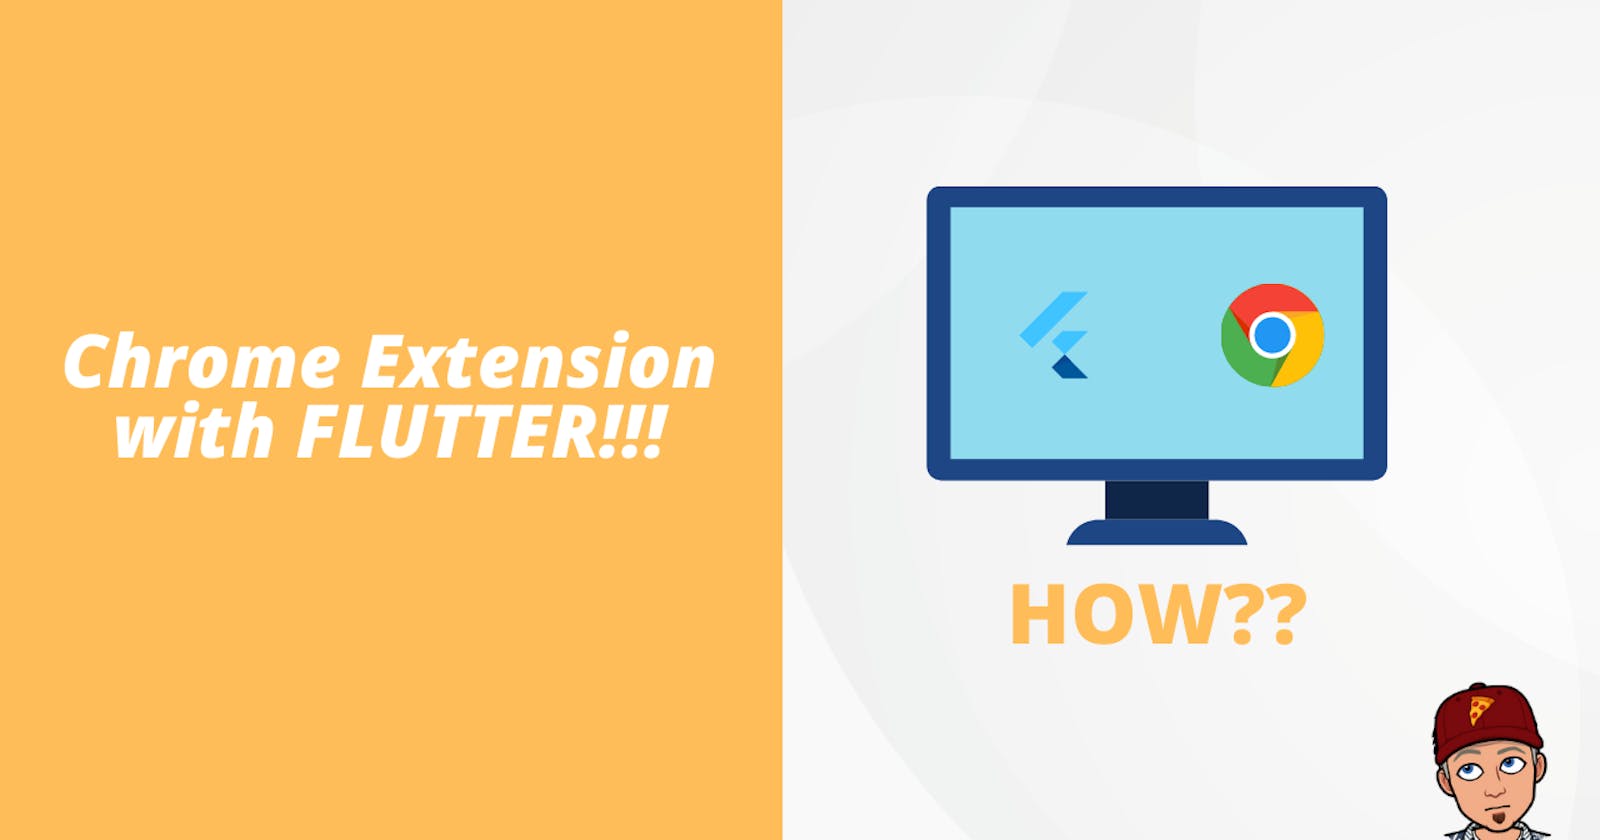 Let's build a Chrome Extension using Flutter!